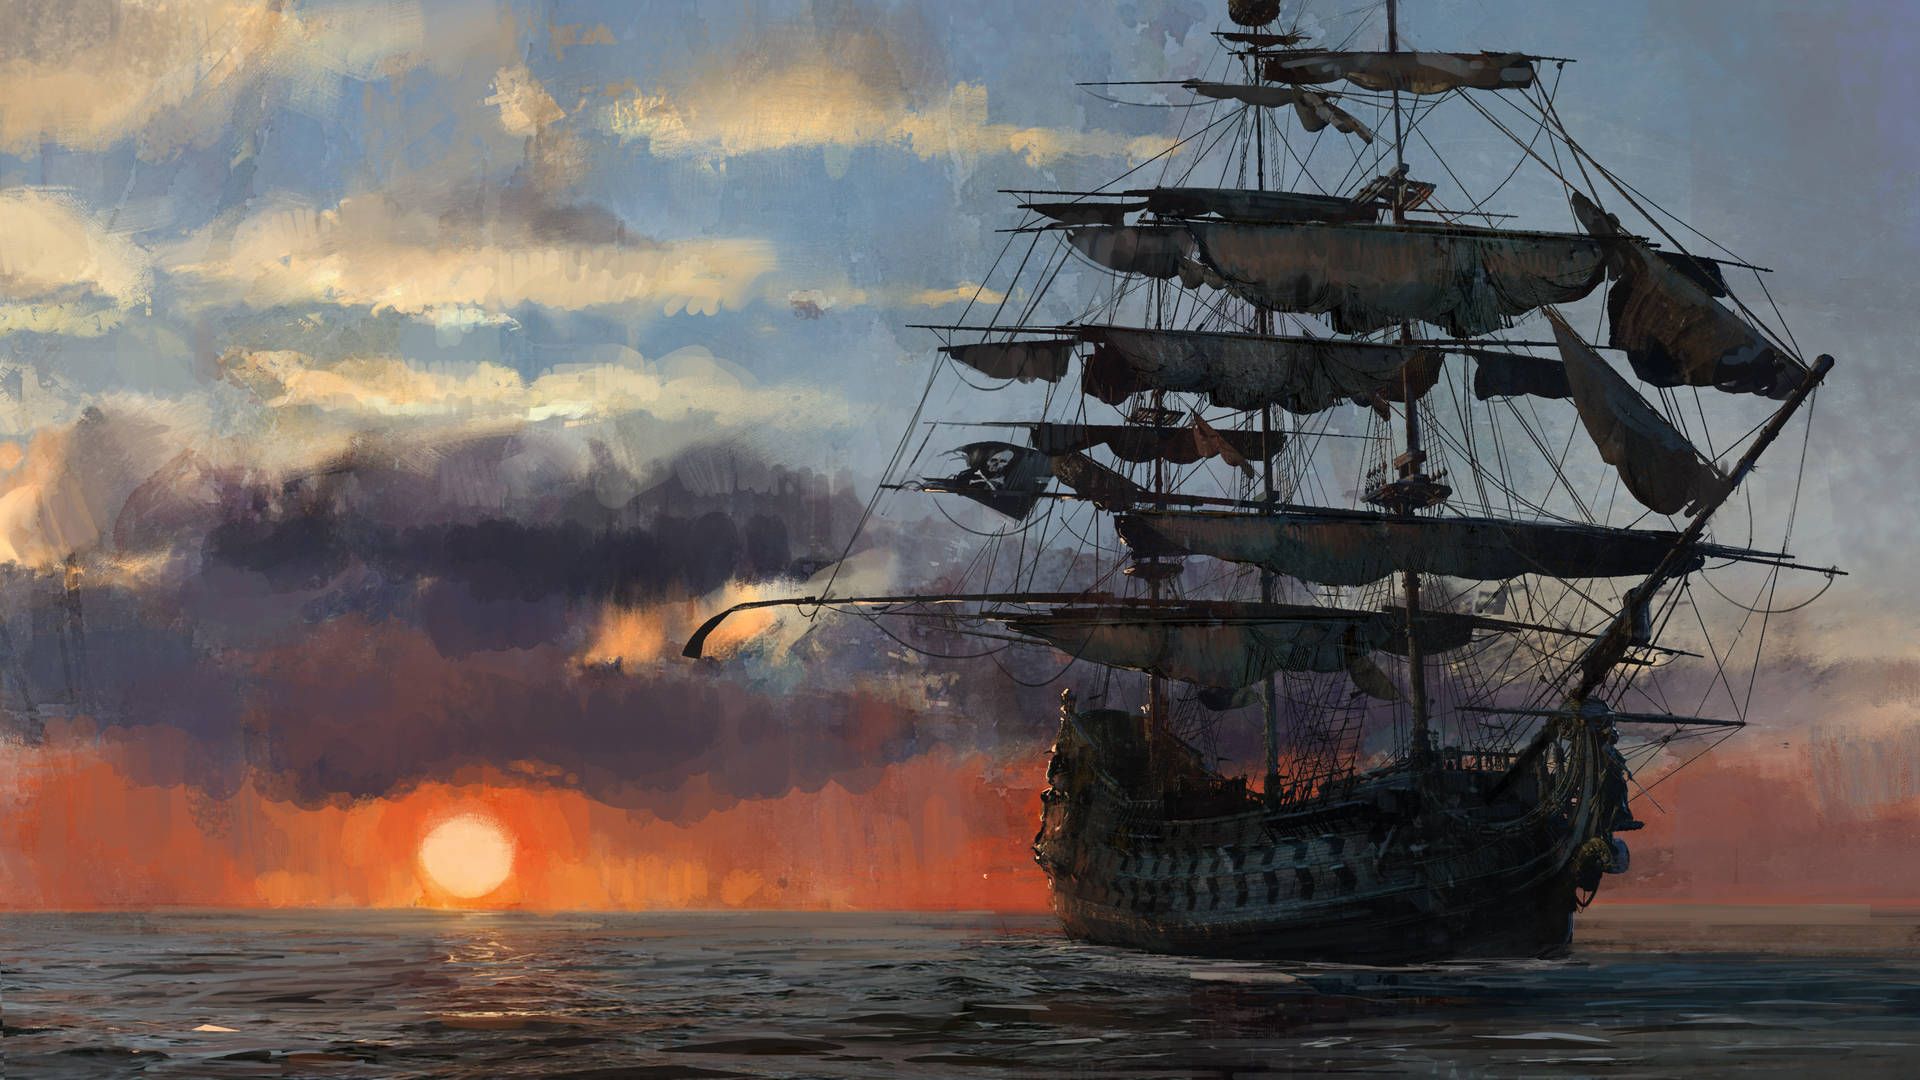 Download 4K Pirate Ship Sailing During Sunset Wallpaper